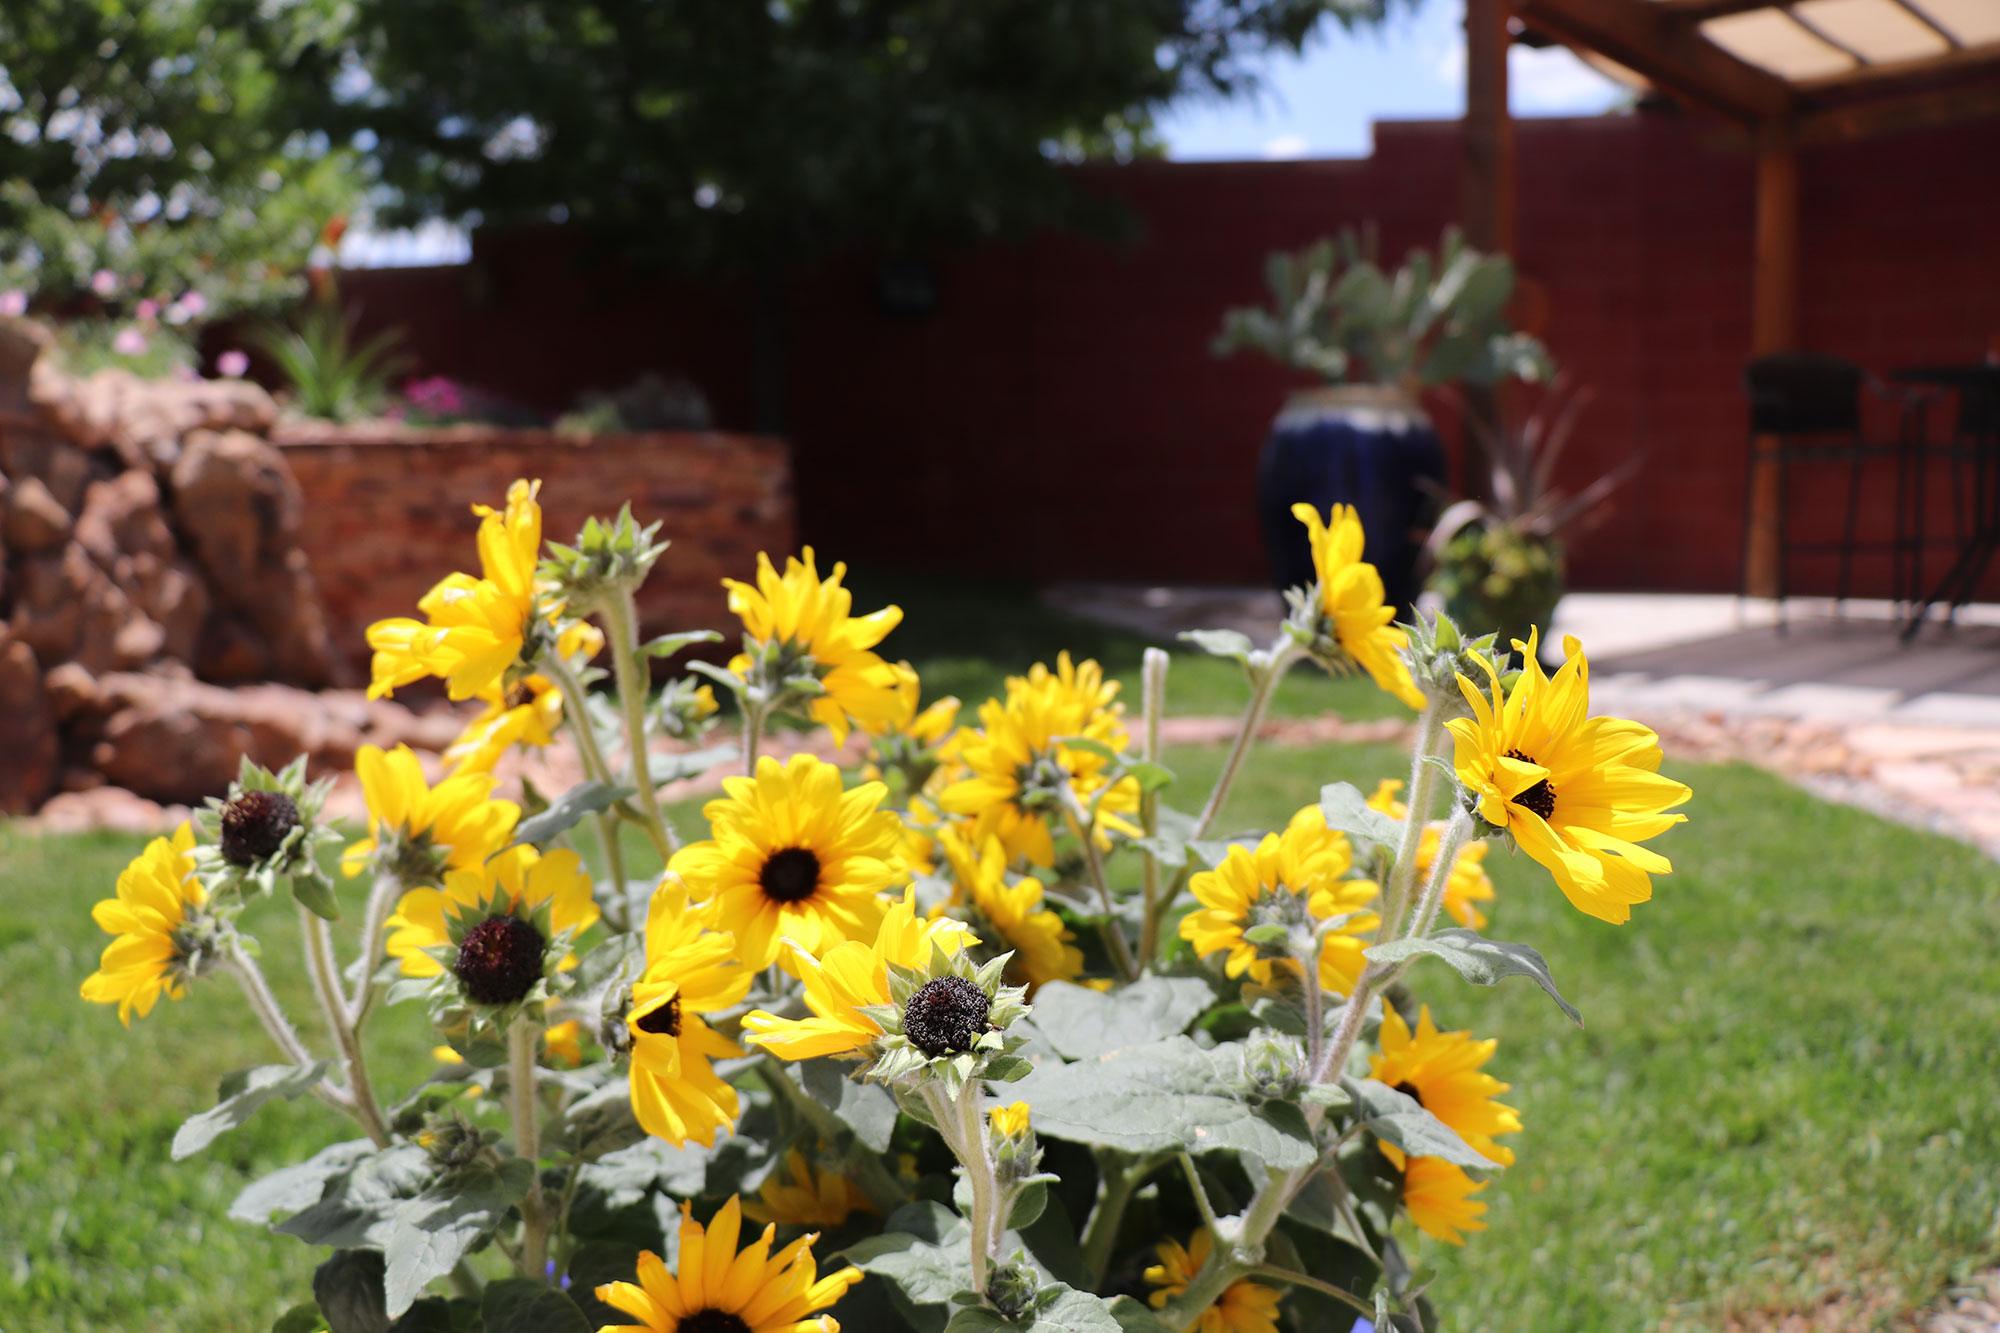 Yellow Sunflowers in Backyard